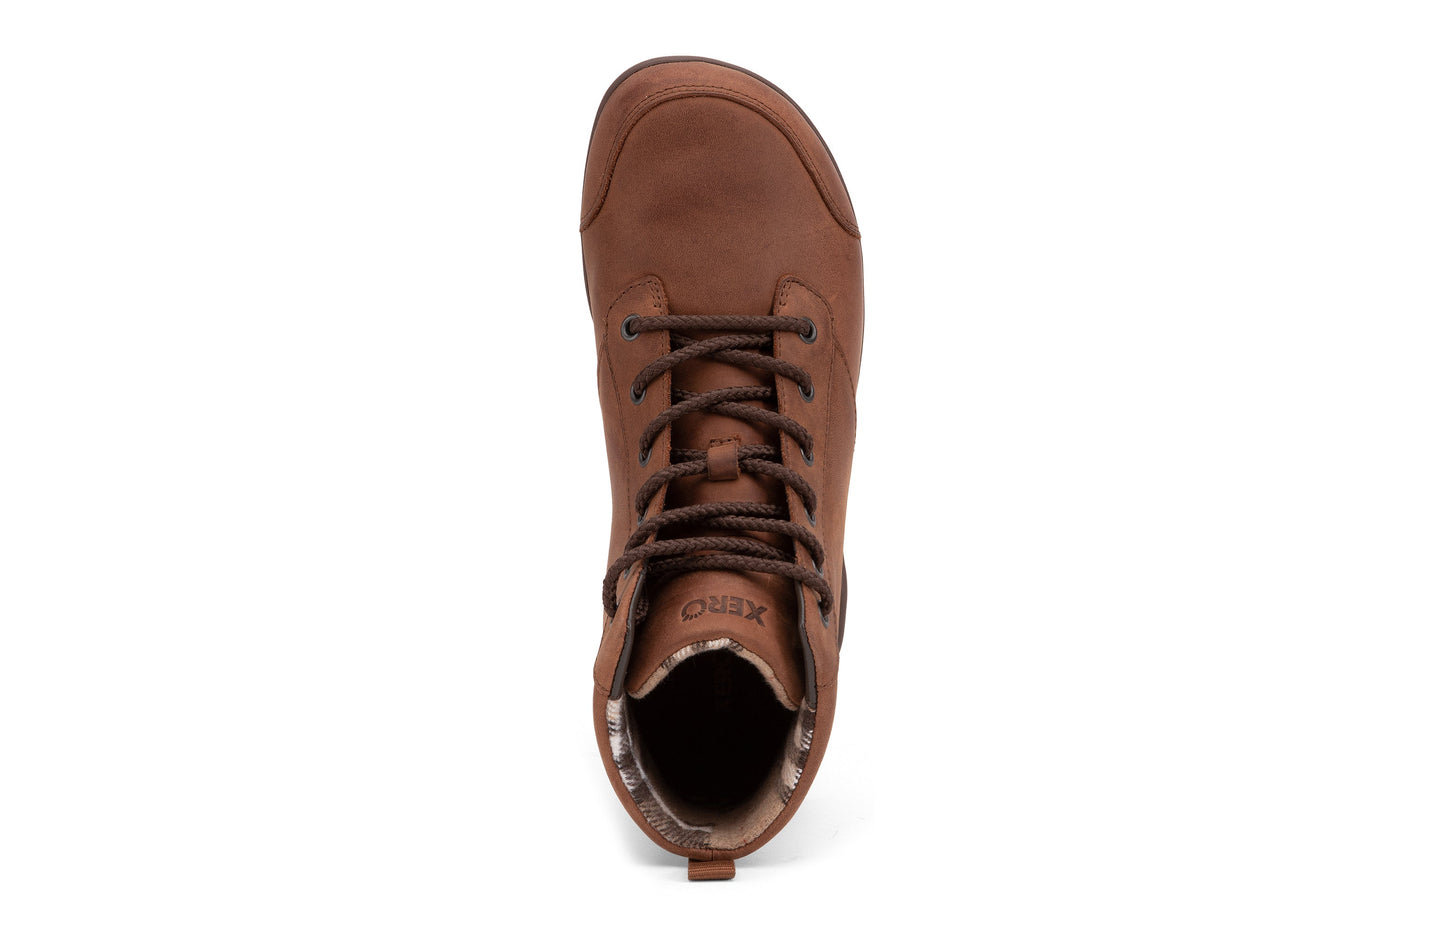 Xero Shoes Denver Leather barfods vinterstøvler til mænd i farven brown, top